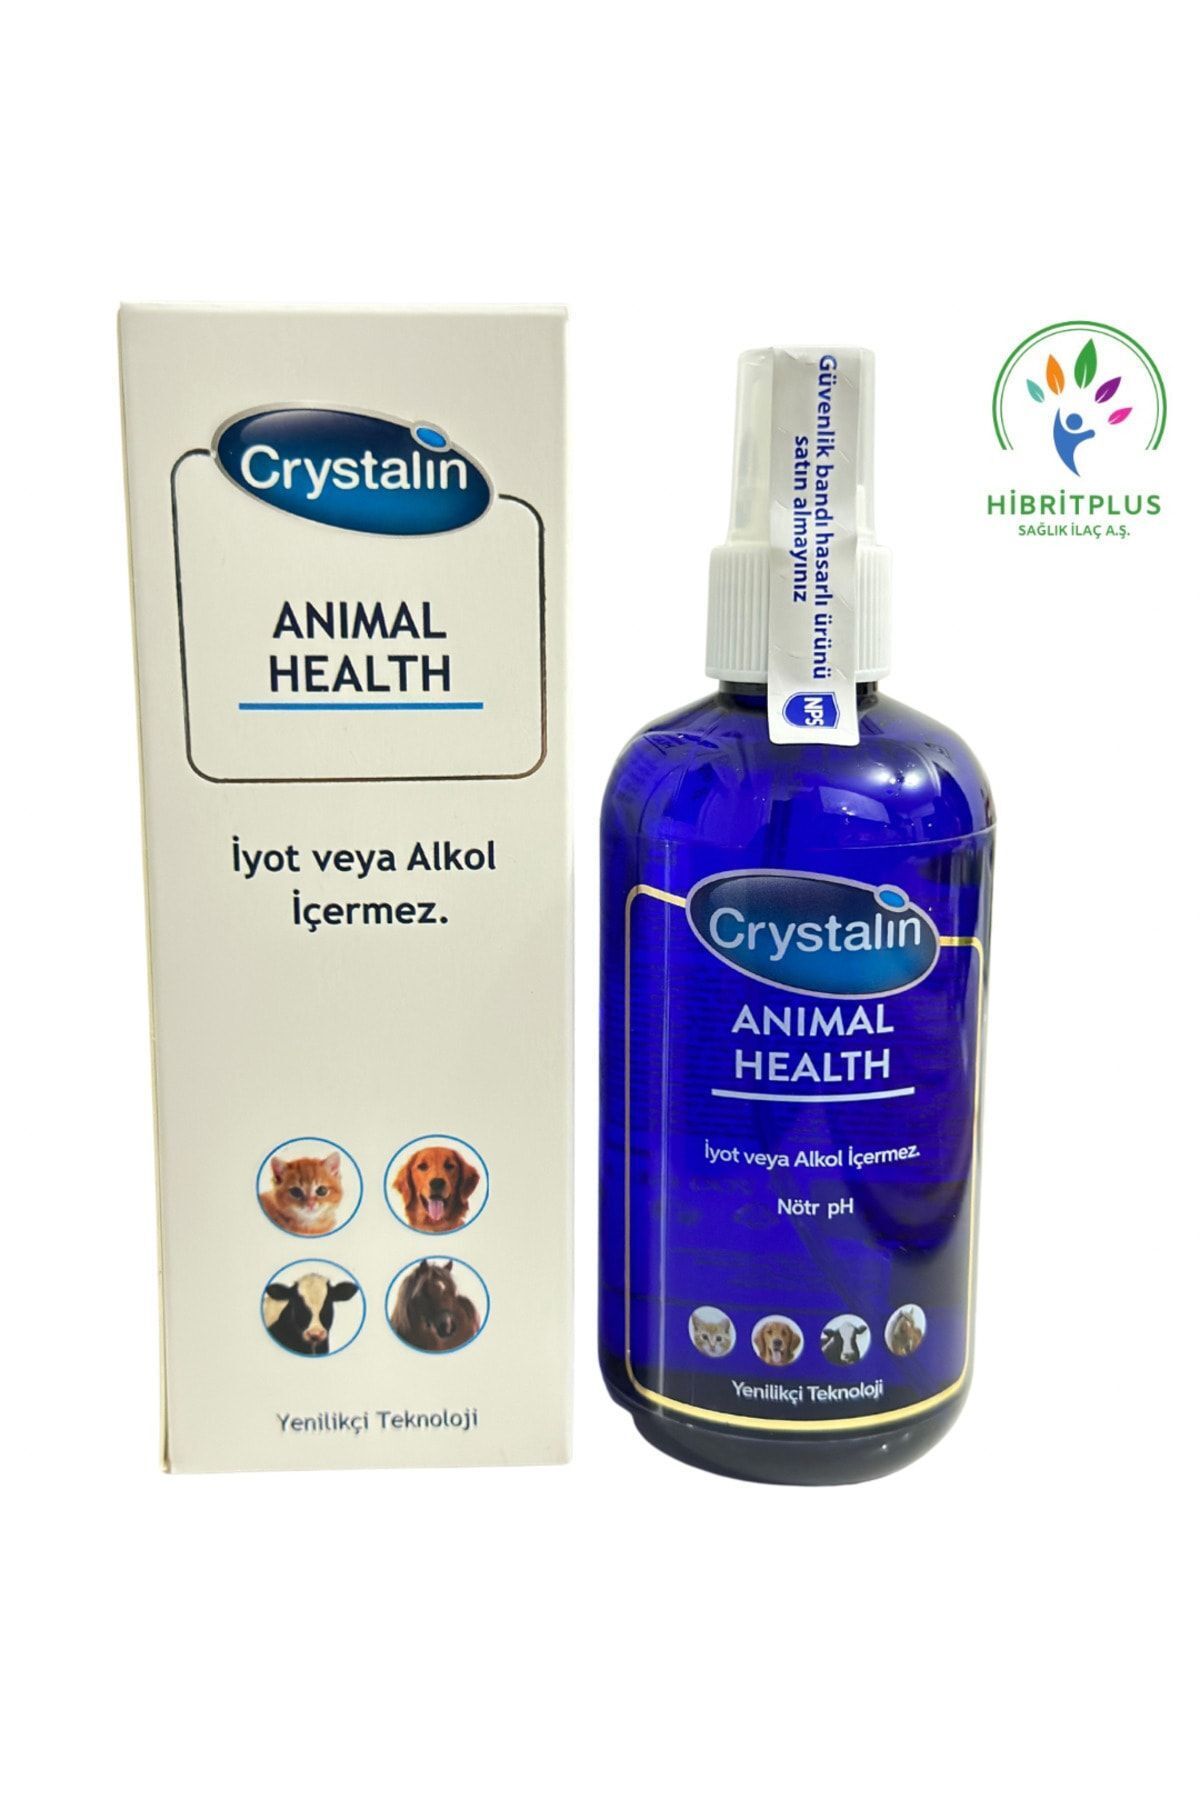 Crystalin Animal Health 250 ml / 2026 Miatlıdır